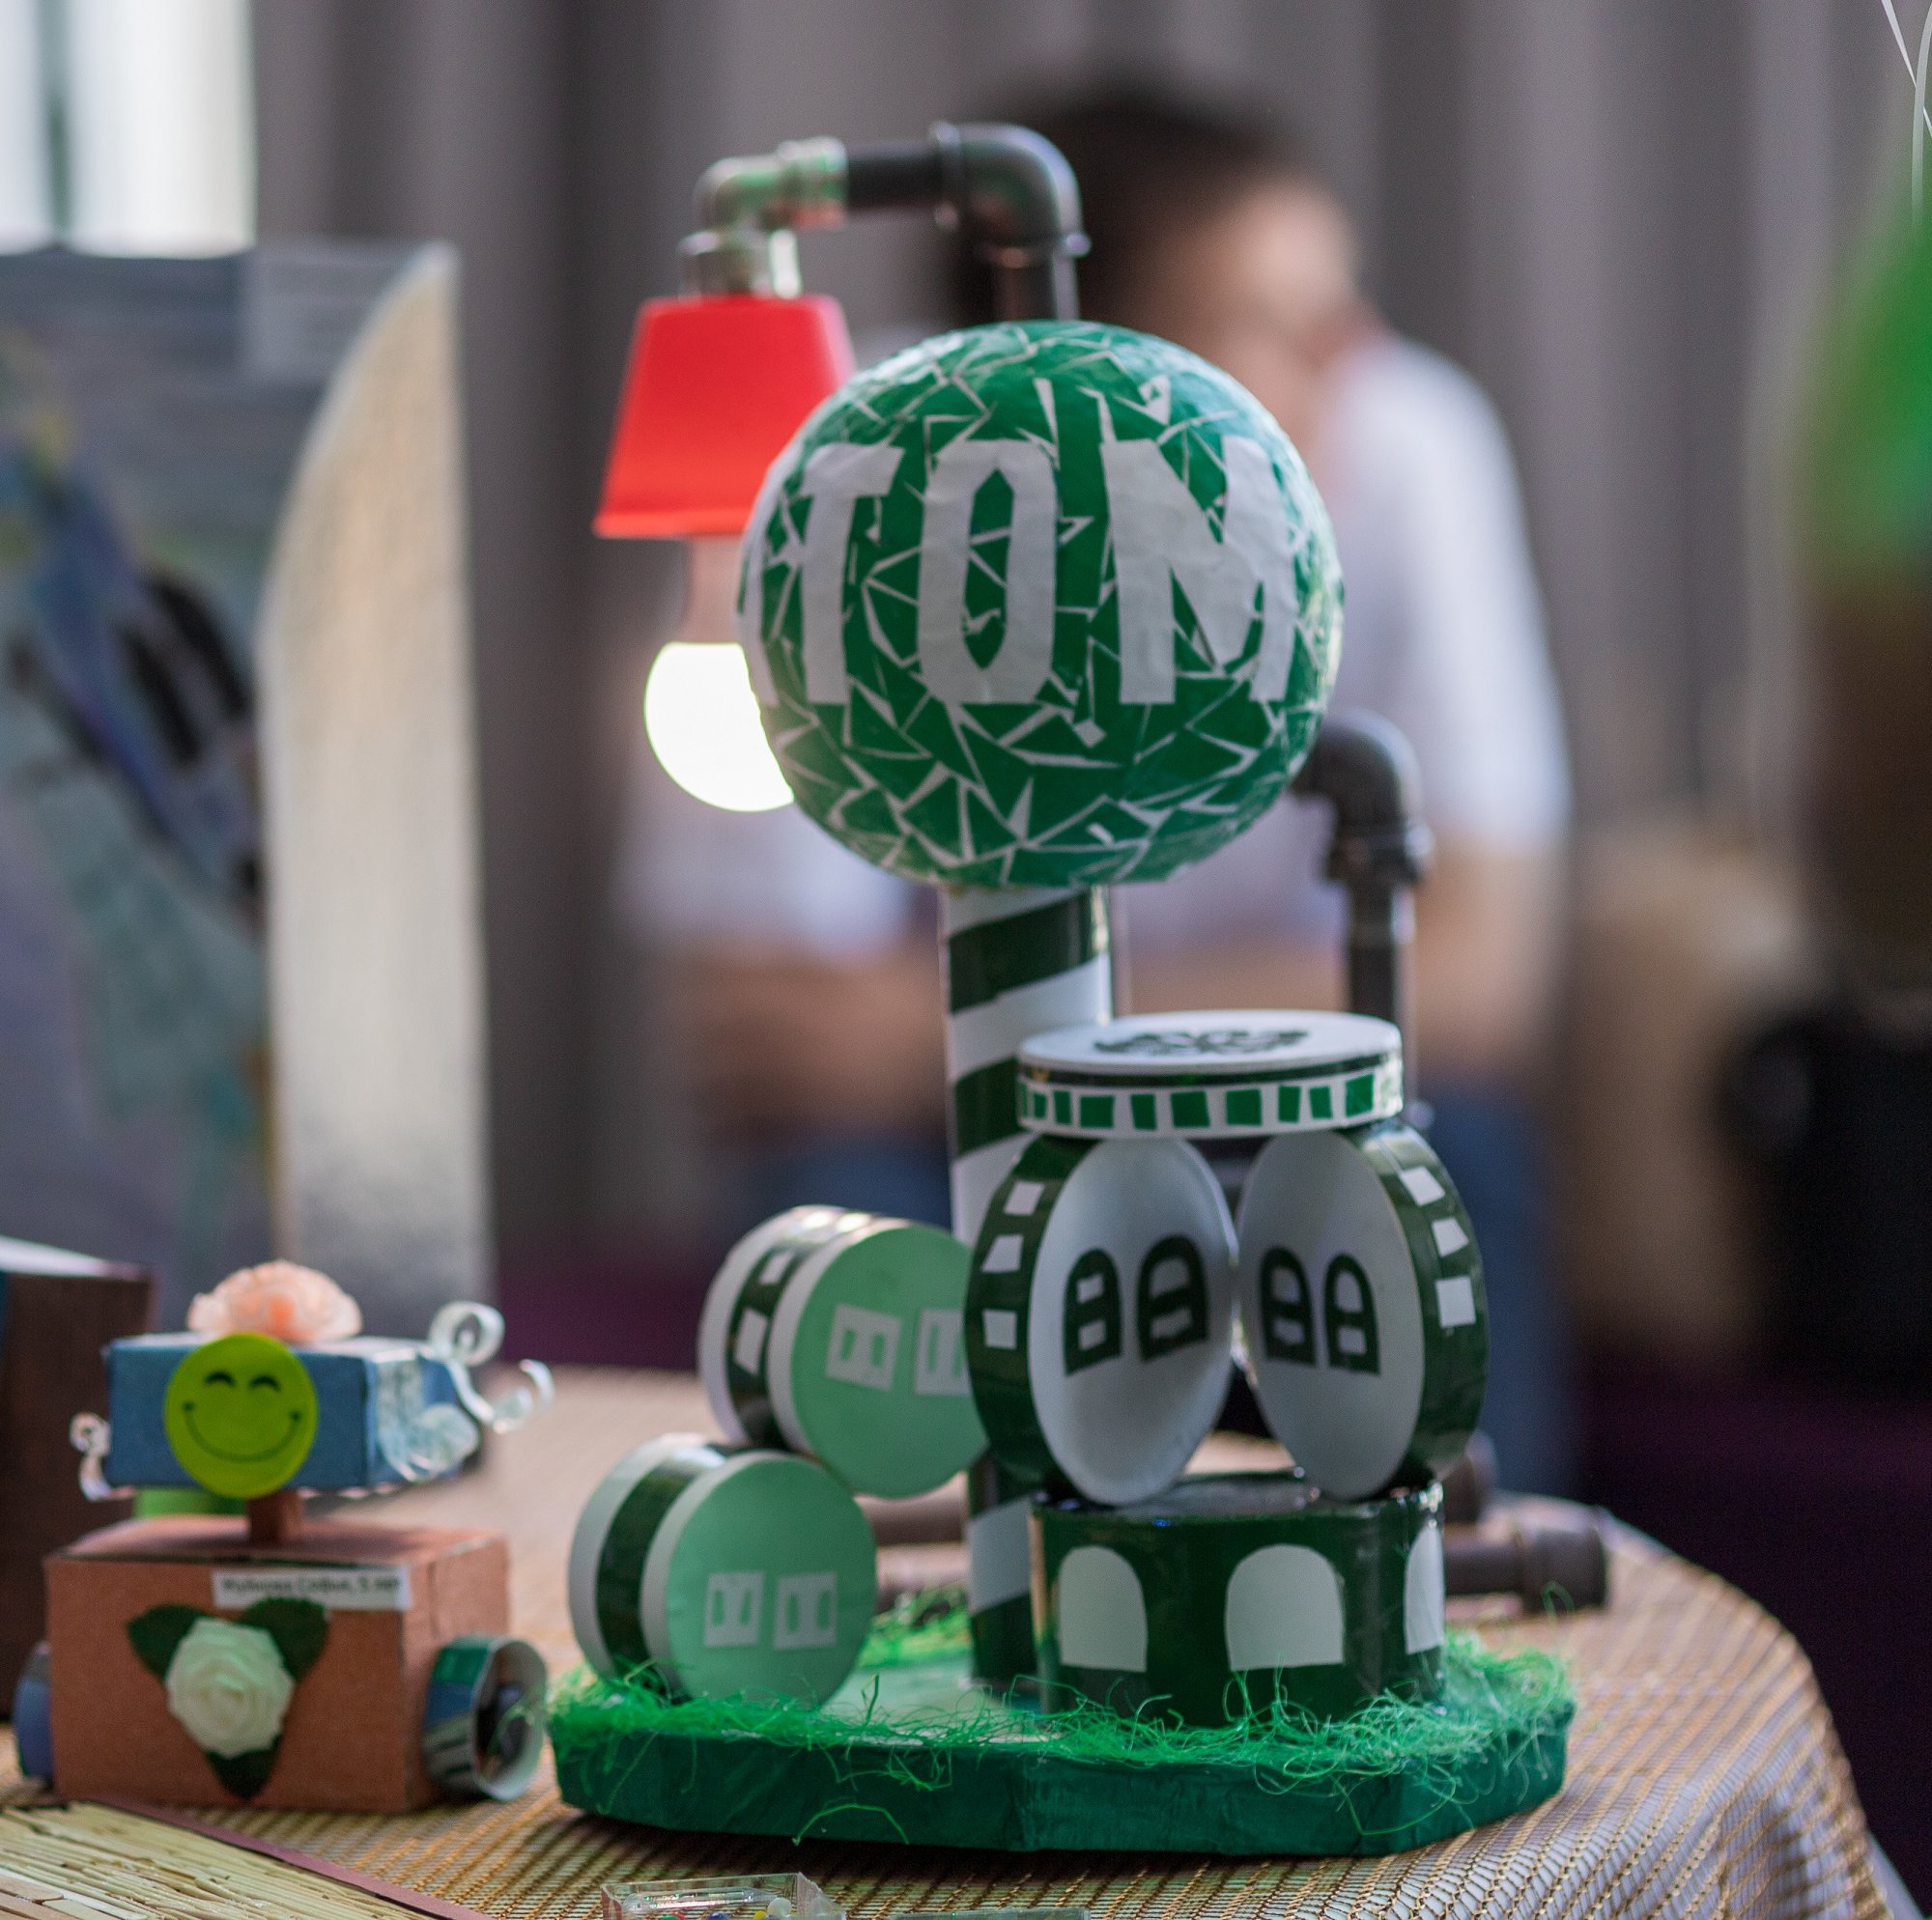 Компания «Атомстройкомплекс» организовала фестиваль детского творчества «Город мастеров»